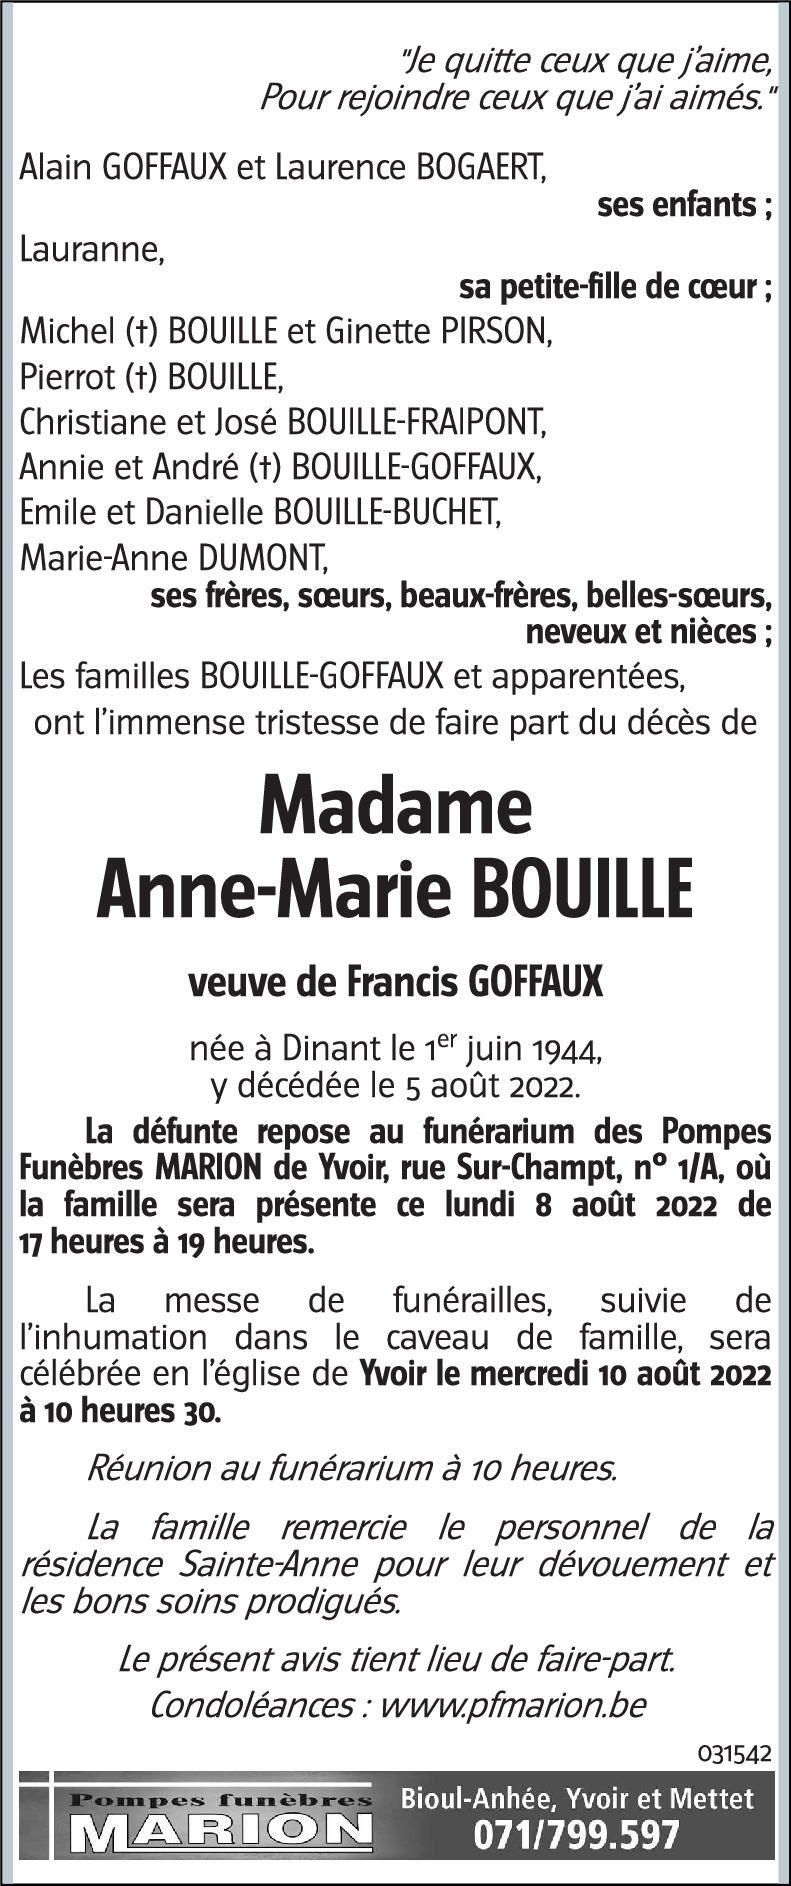 Anne-Marie BOUILLE